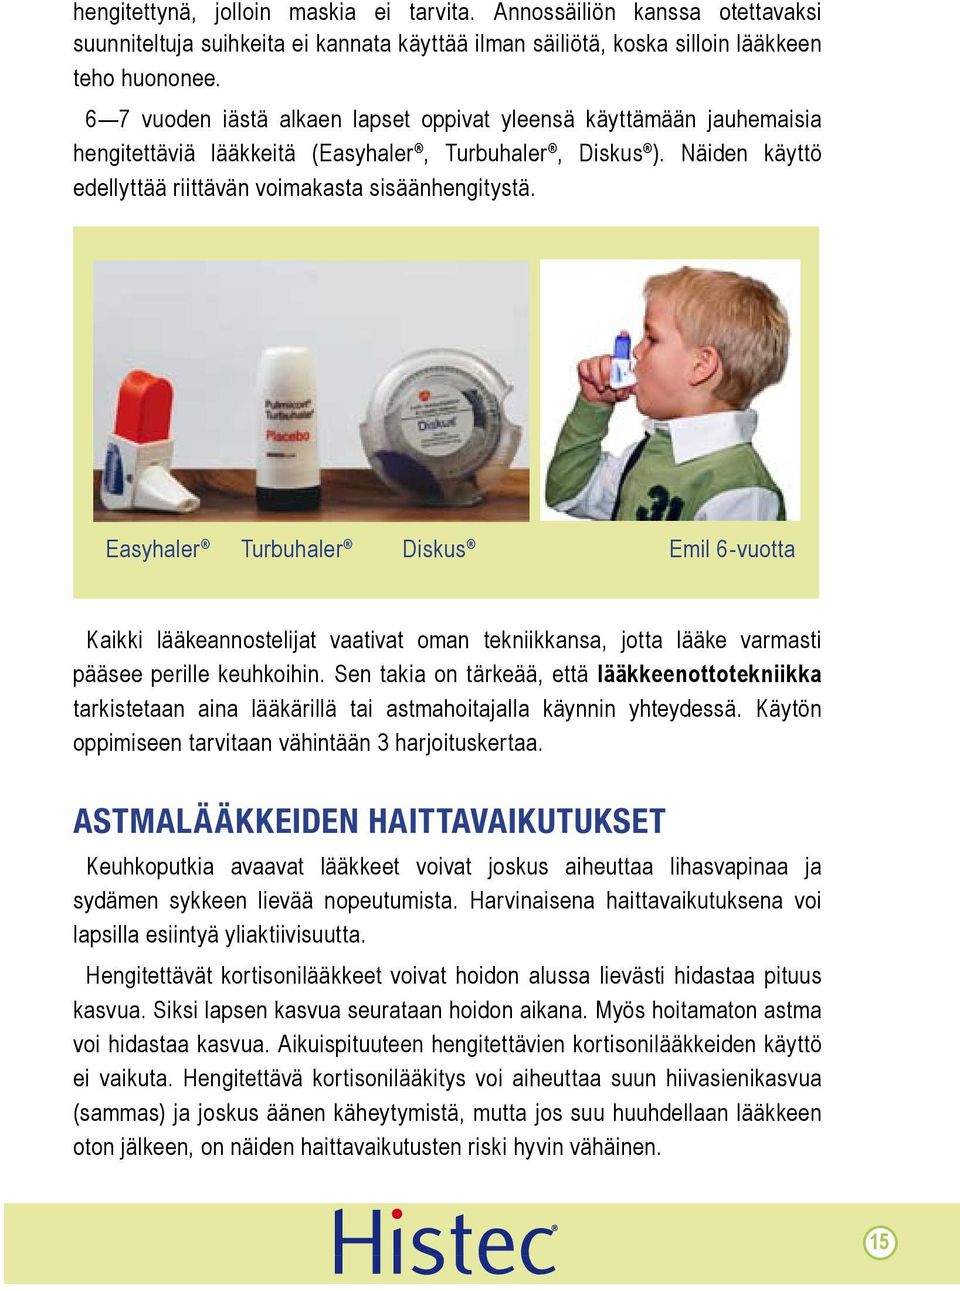 Easyhaler Turbuhaler Diskus Emil 6-vuotta Kaikki lääkeannostelijat vaativat oman tekniikkansa, jotta lääke varmasti pääsee perille keuhkoihin.